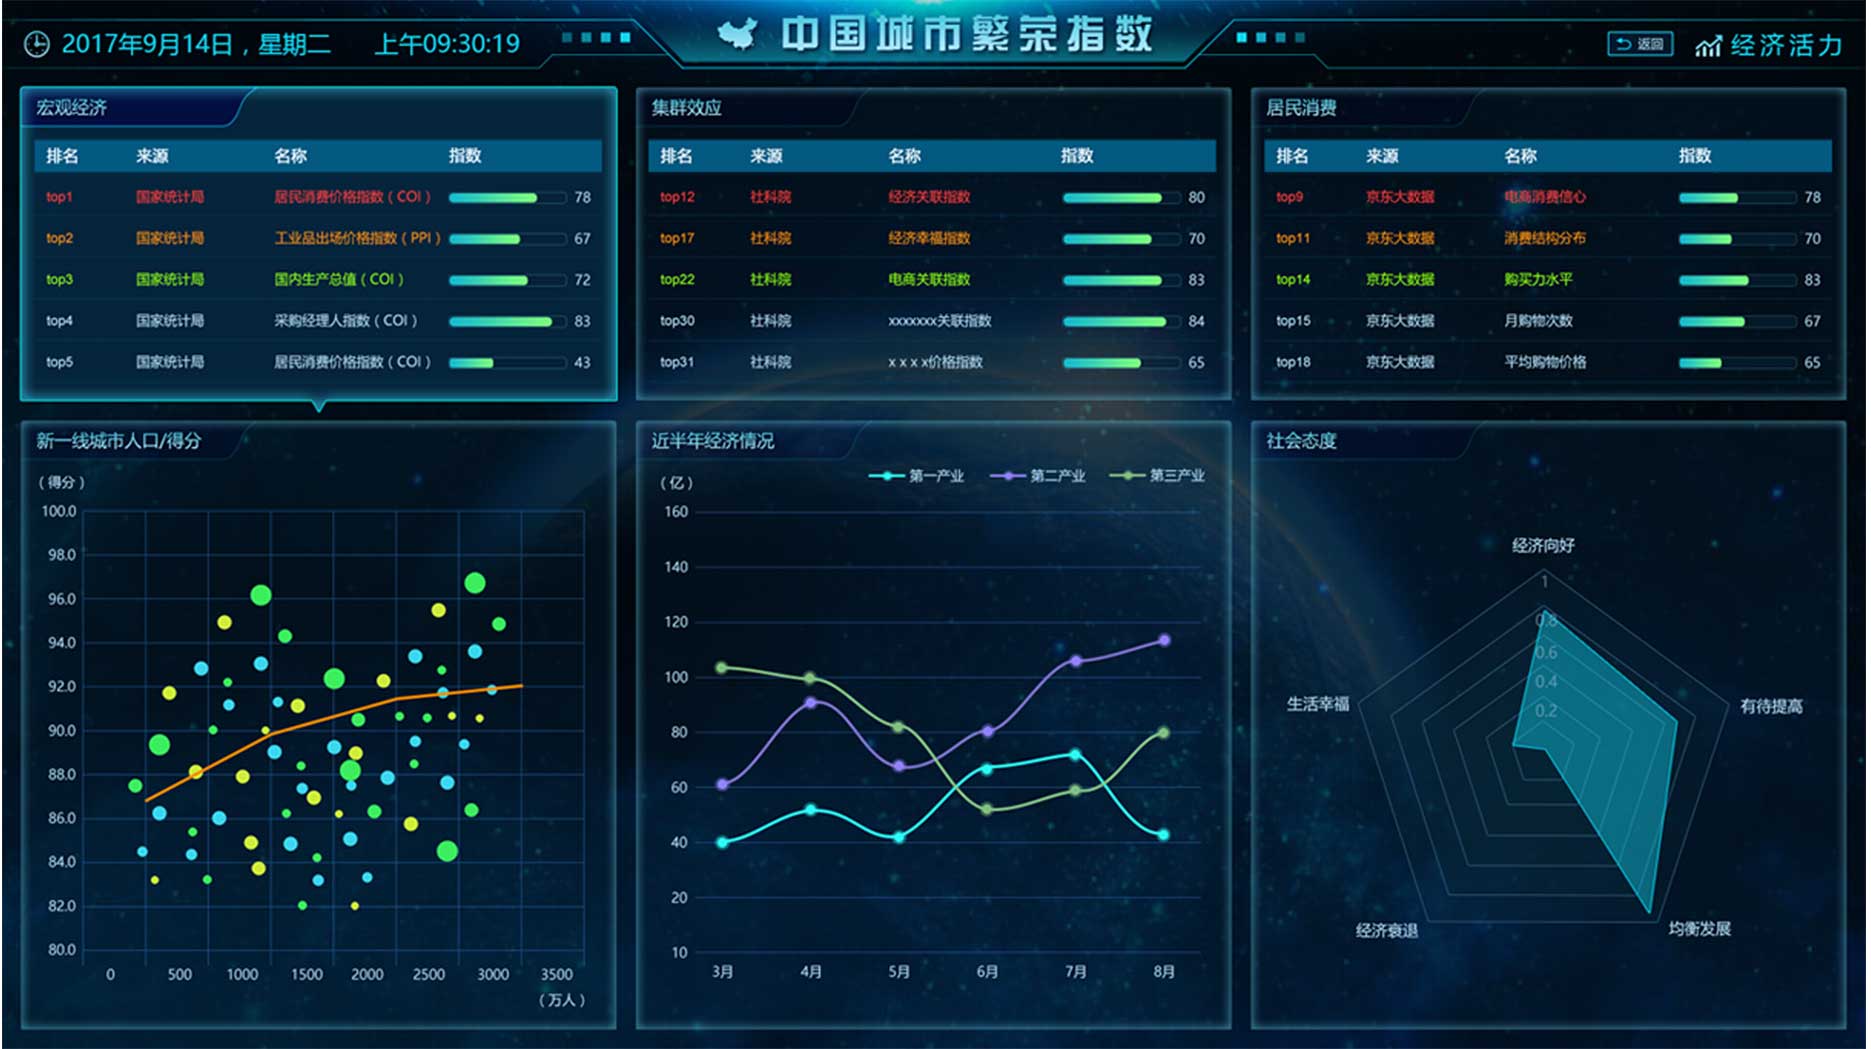 大数据指数可视化—中国城市繁荣指数界面设计MICAPS4系统